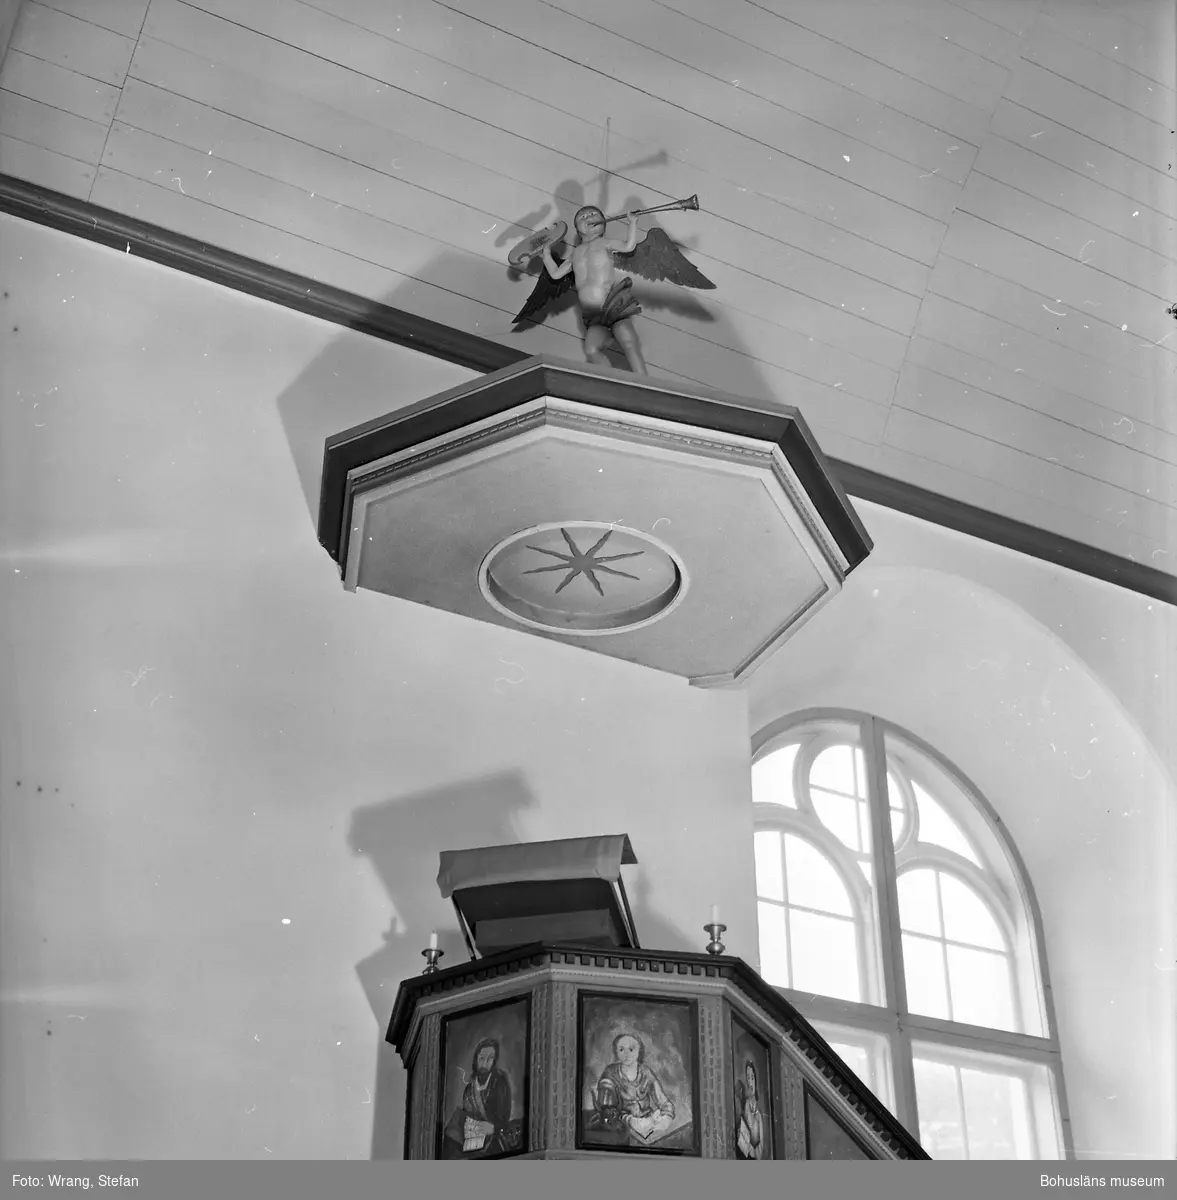 Text till bilden: "Tjärnö kyrka. Predikstolen. Tillverkad på 1600-talet".